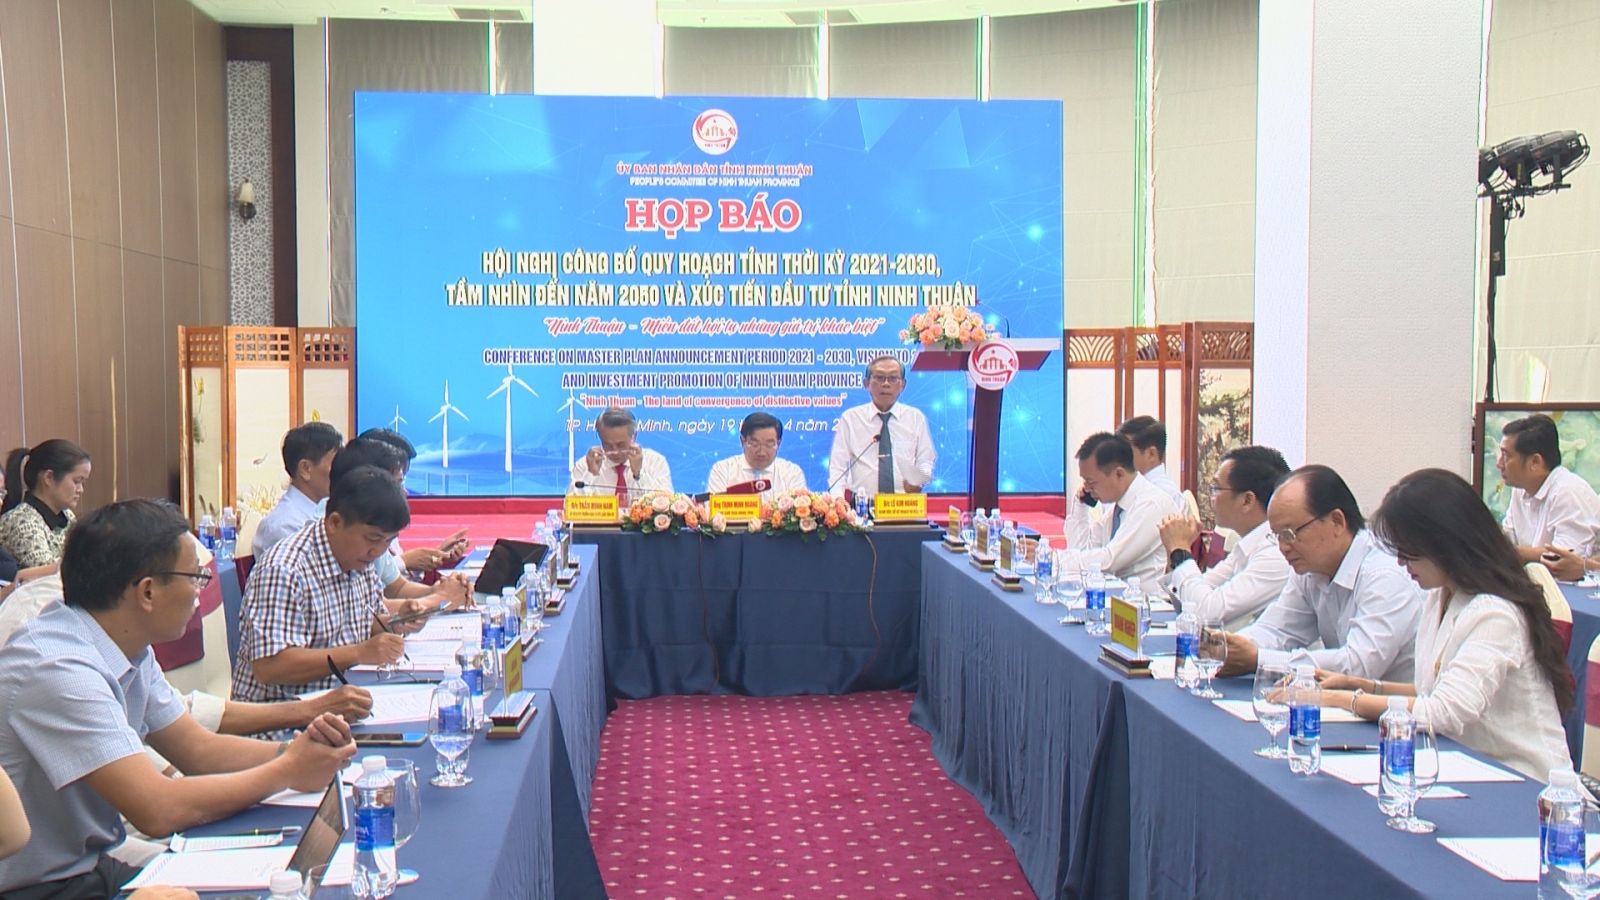 họp báo công bố thông tin về Hội nghị quy hoạch thời kỳ 2021-2030, tầm nhìn đến năm 2050 của tỉnh Ninh Thuận.